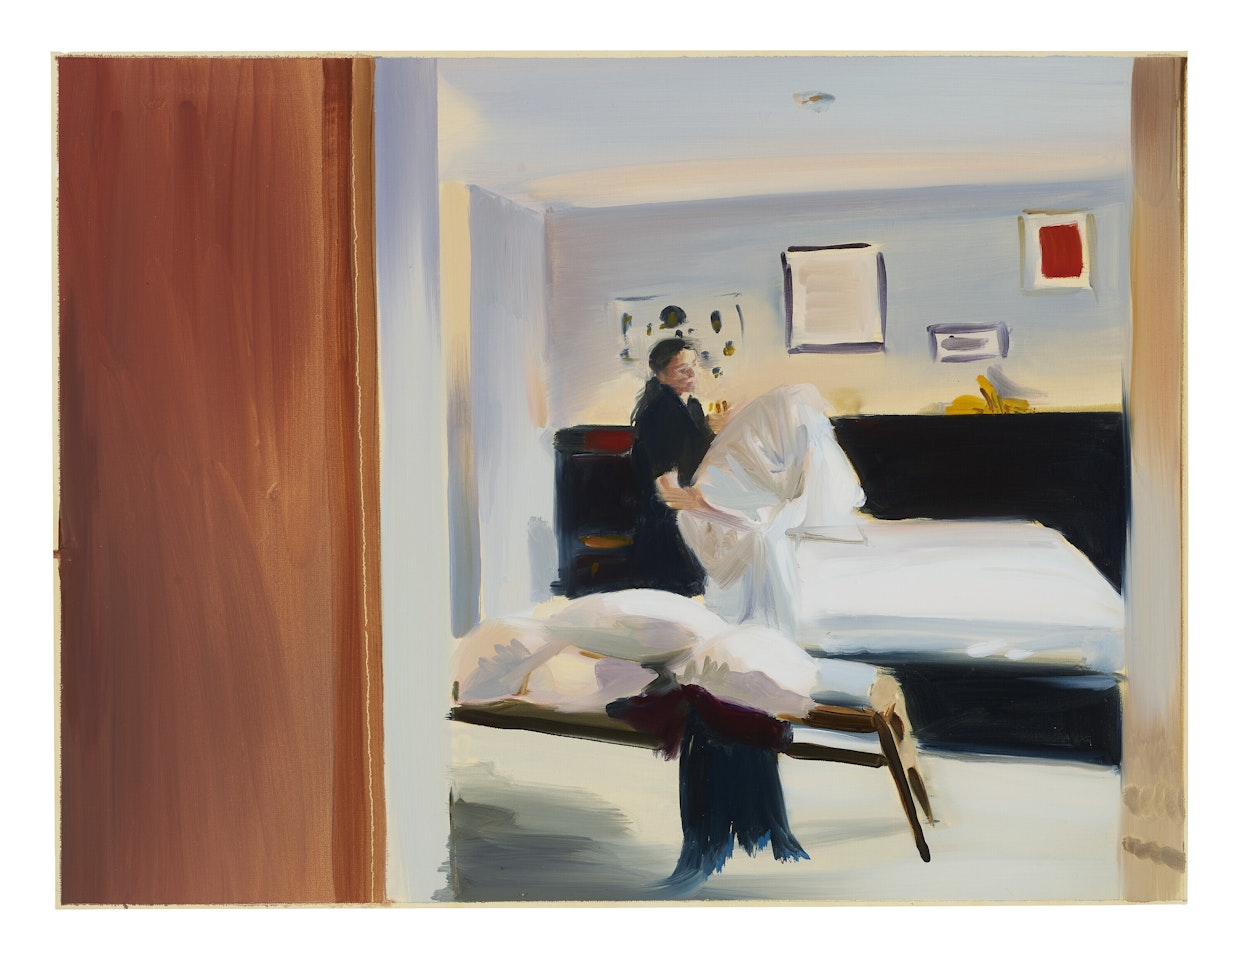 Study for Bedding, Room 44 by Caroline Walker